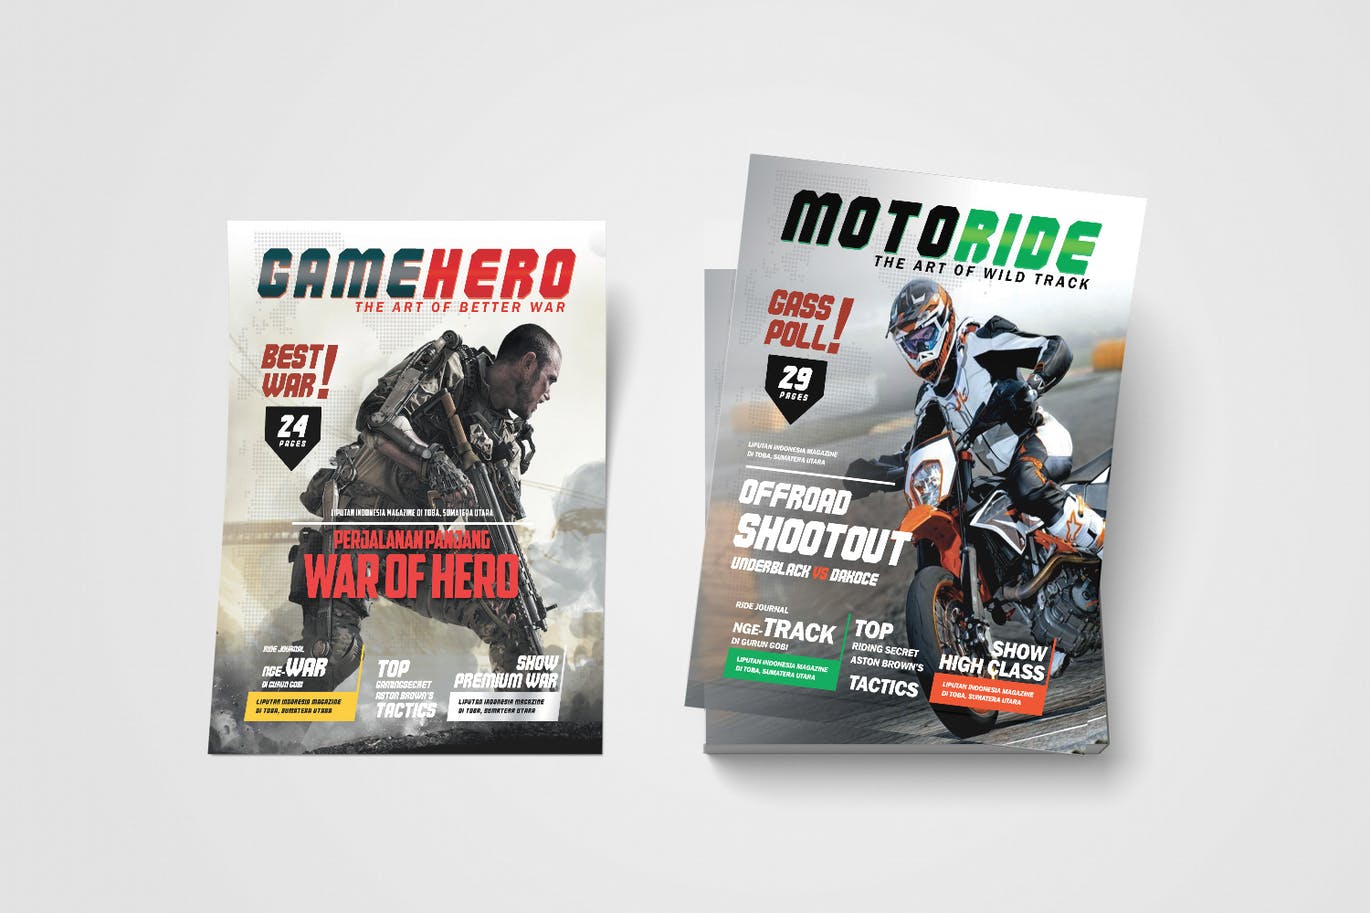 摩托车手运动和战争游戏传单设计模板 Motor Biker Sports and Game War Flyer 设计素材 第2张